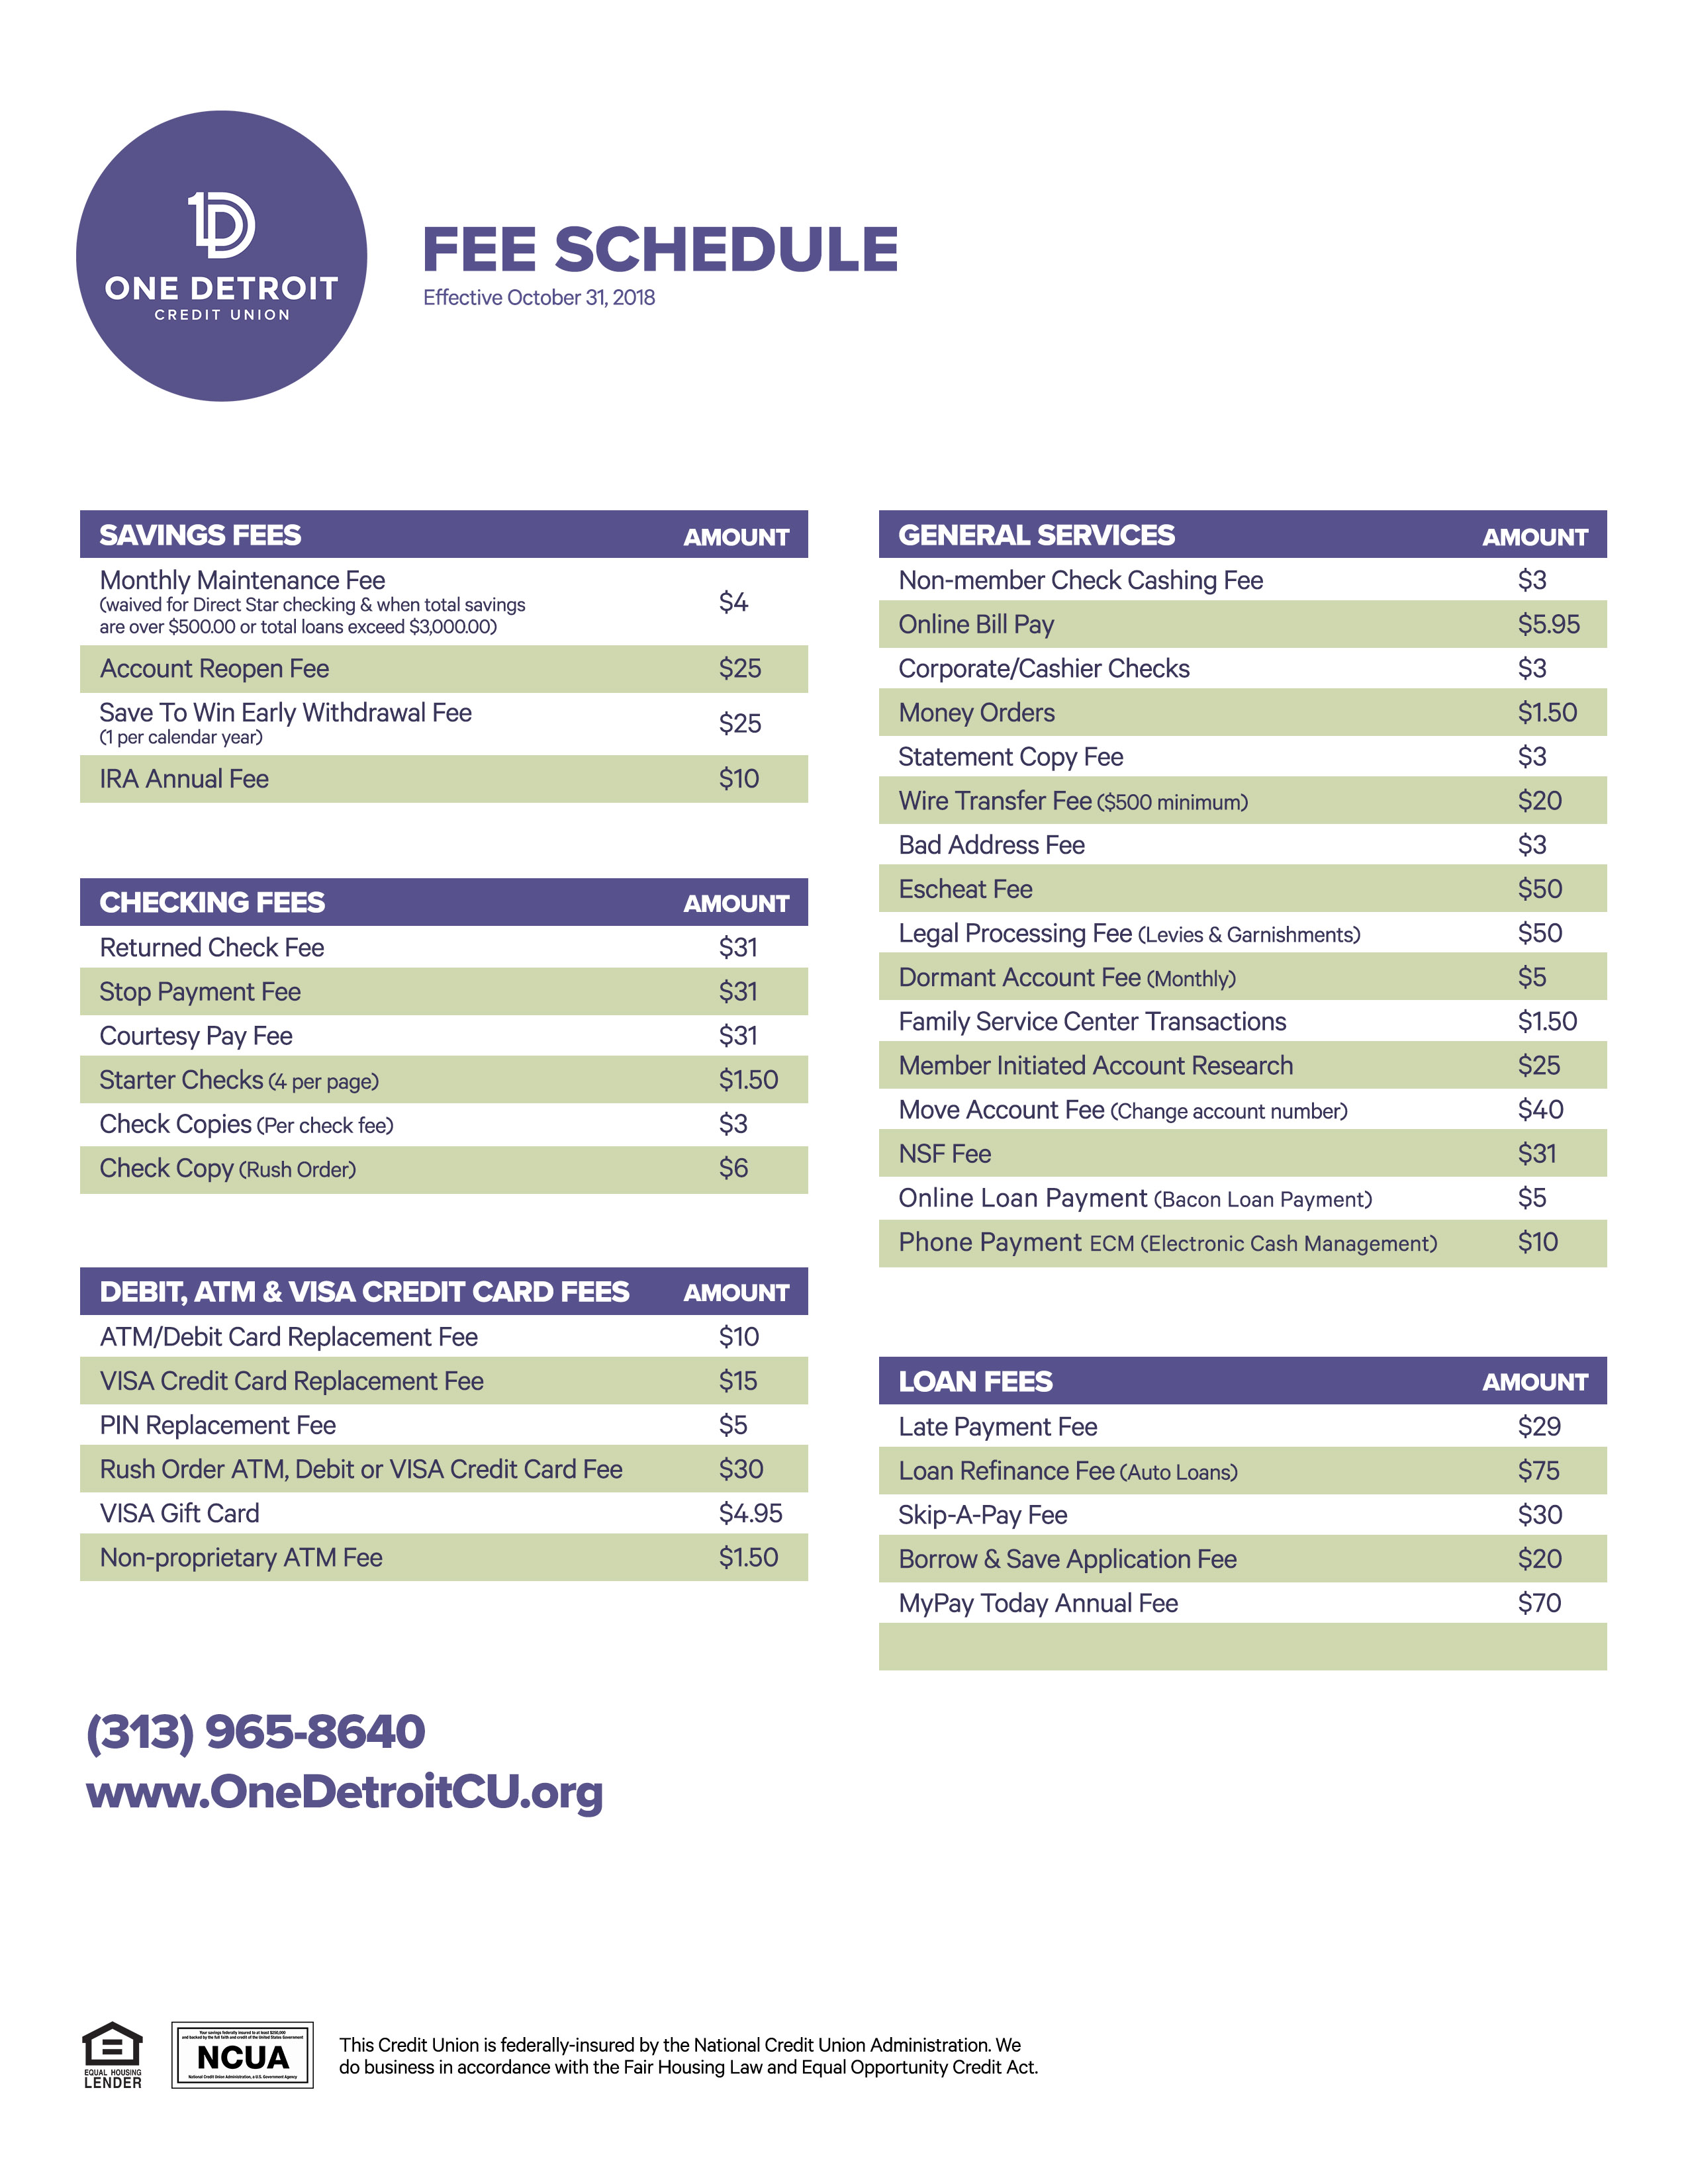 Fee Schedule - One Detroit CU